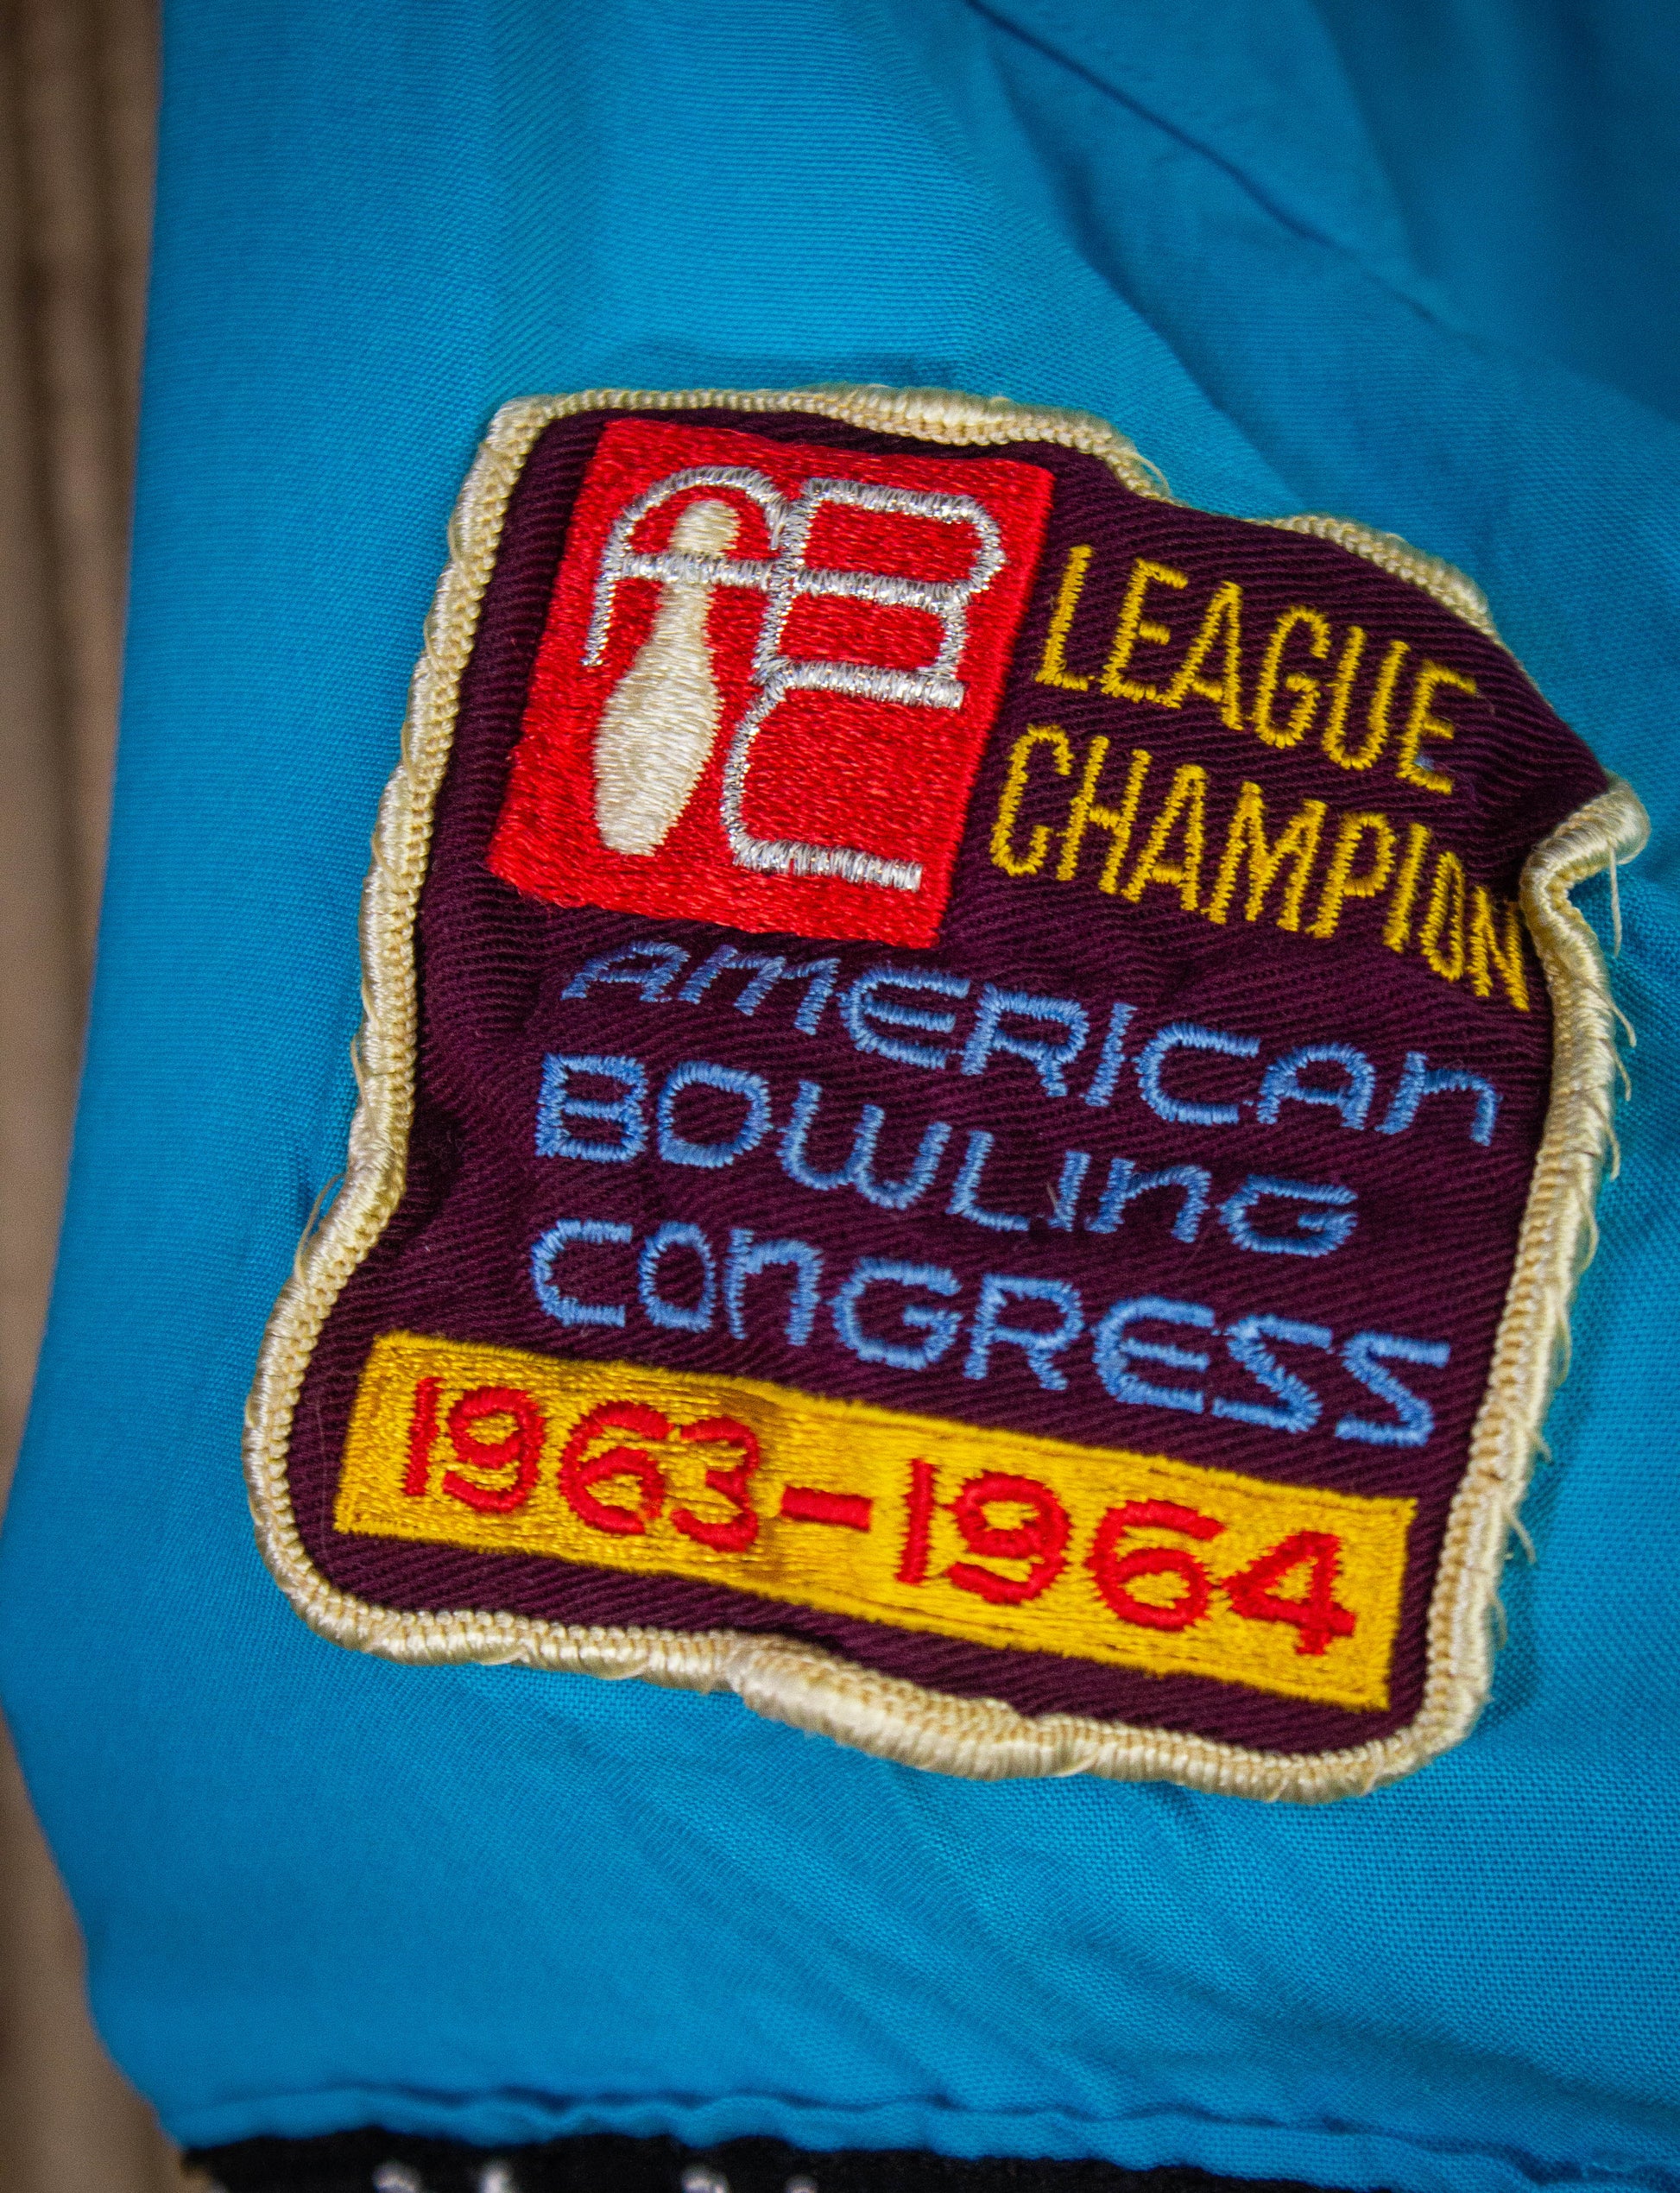 Vintage Dunbrooke Bowler League Champs Bowling Shirt 60s Blue Medium